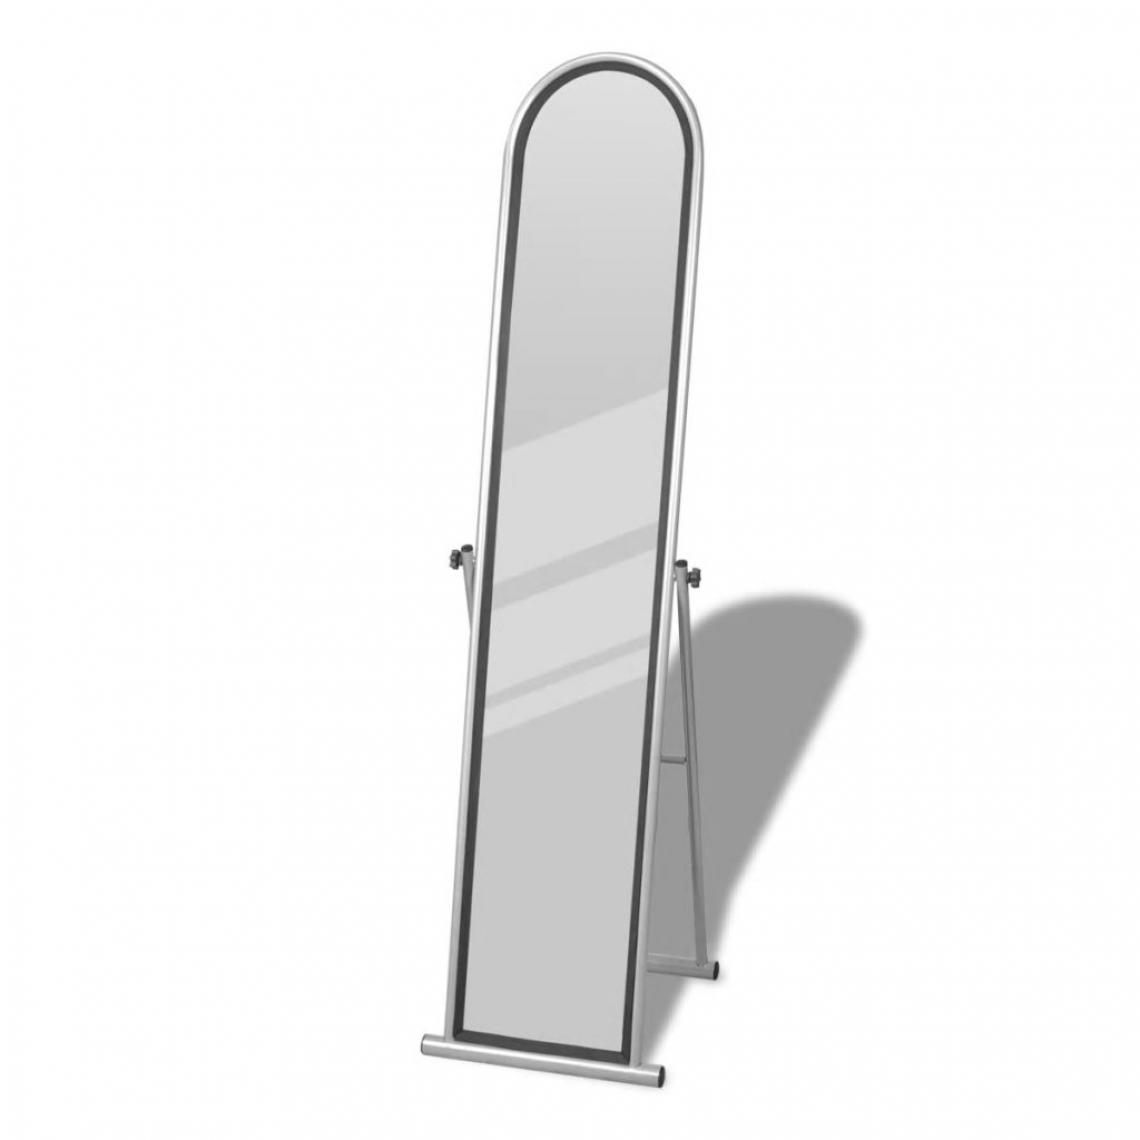 Chunhelife - Miroir autoportant rectangulaire pleine longueur Gris - Miroir de salle de bain